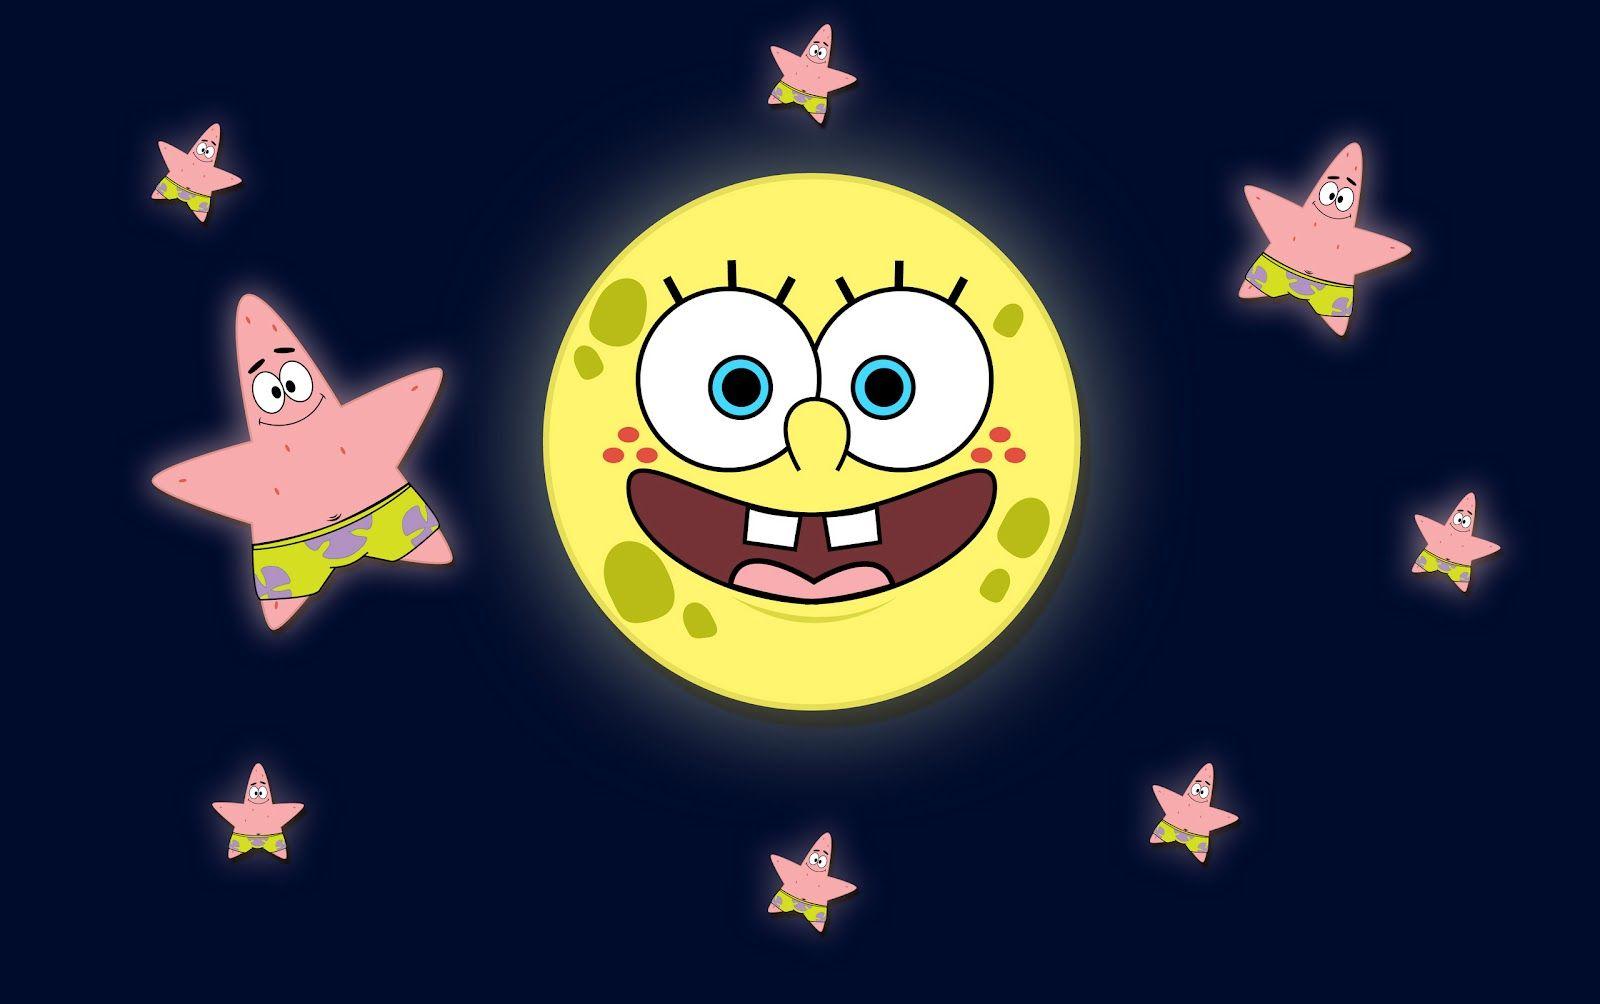 spongebob squarepants and patrick star